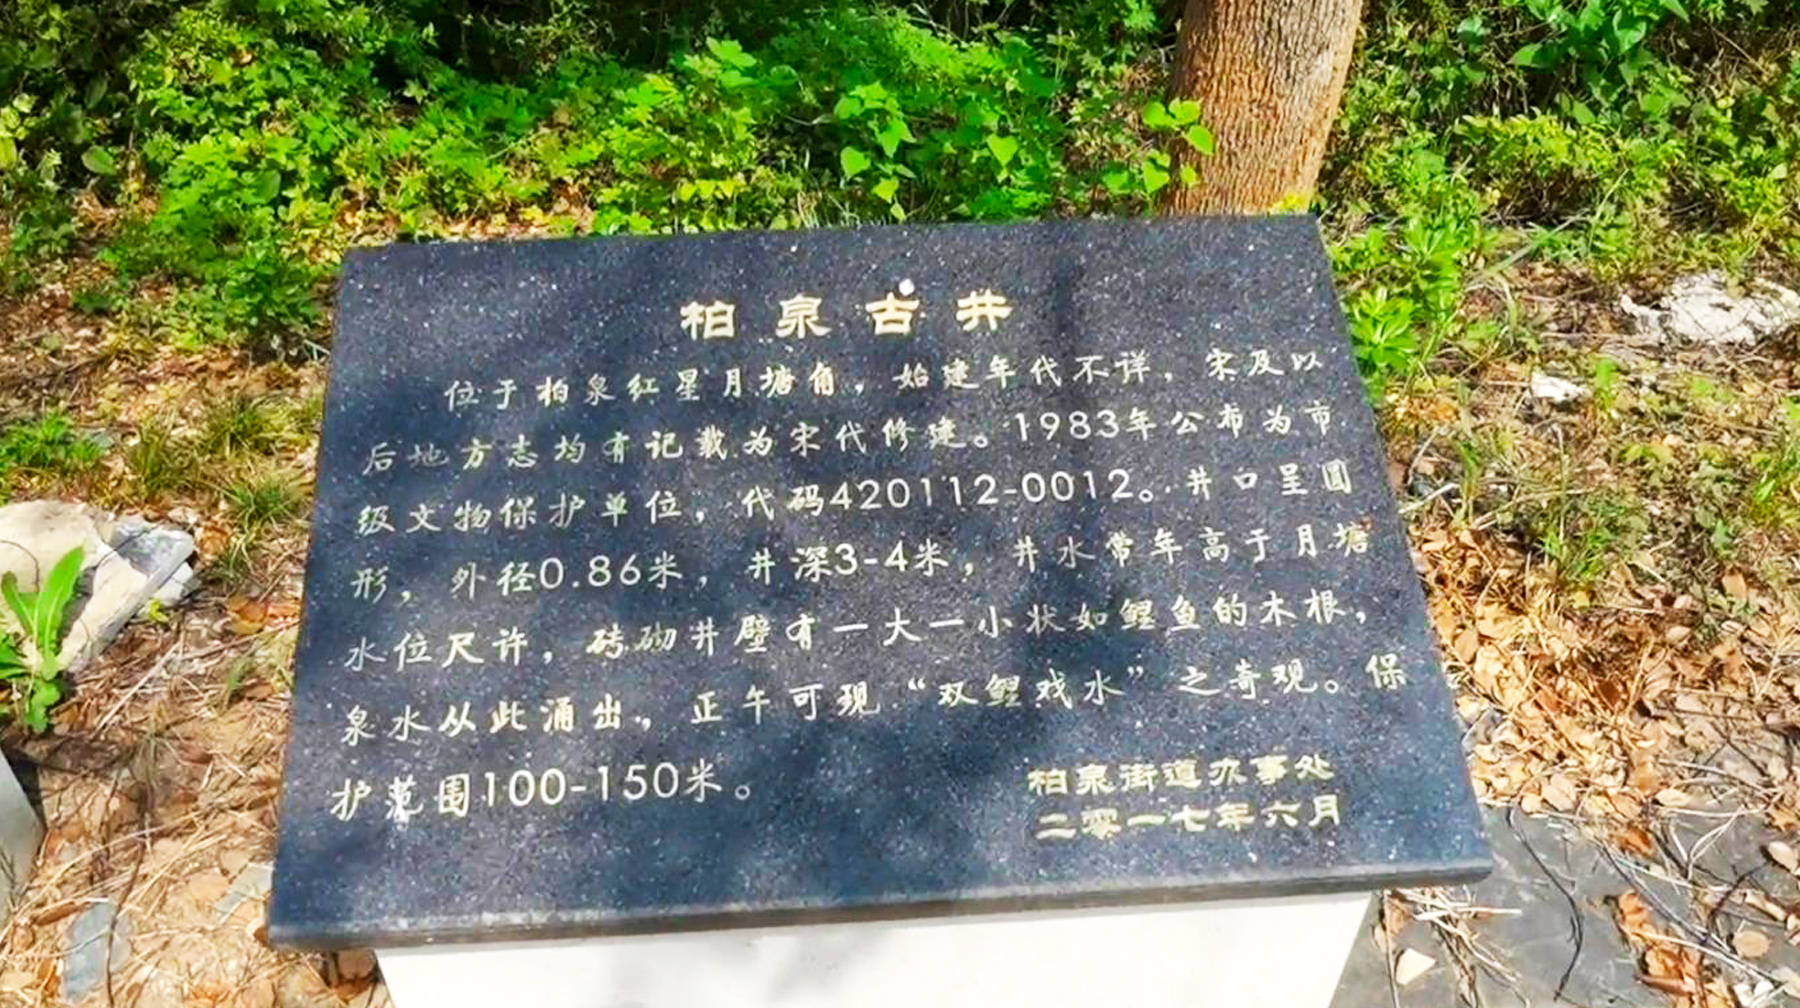 原创湖北武汉郊区有座千年古井:泉眼长流不断,水质甘冽提桶就能接